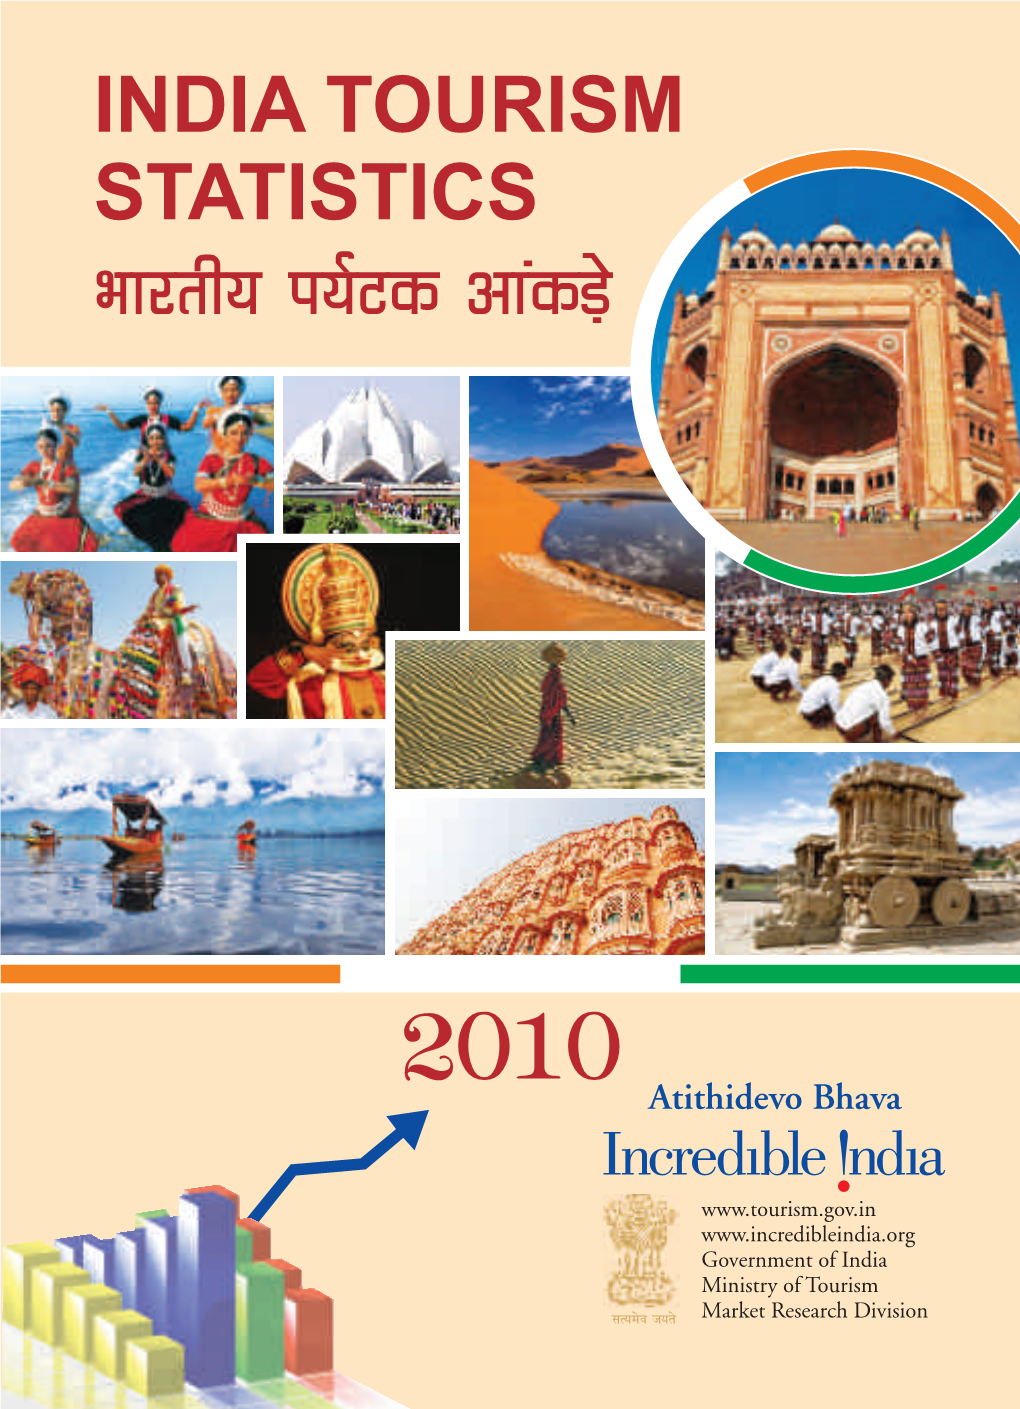 INDIA TOURISM STATISTICS Hkkjrh; I;Zvd Vkadm+S